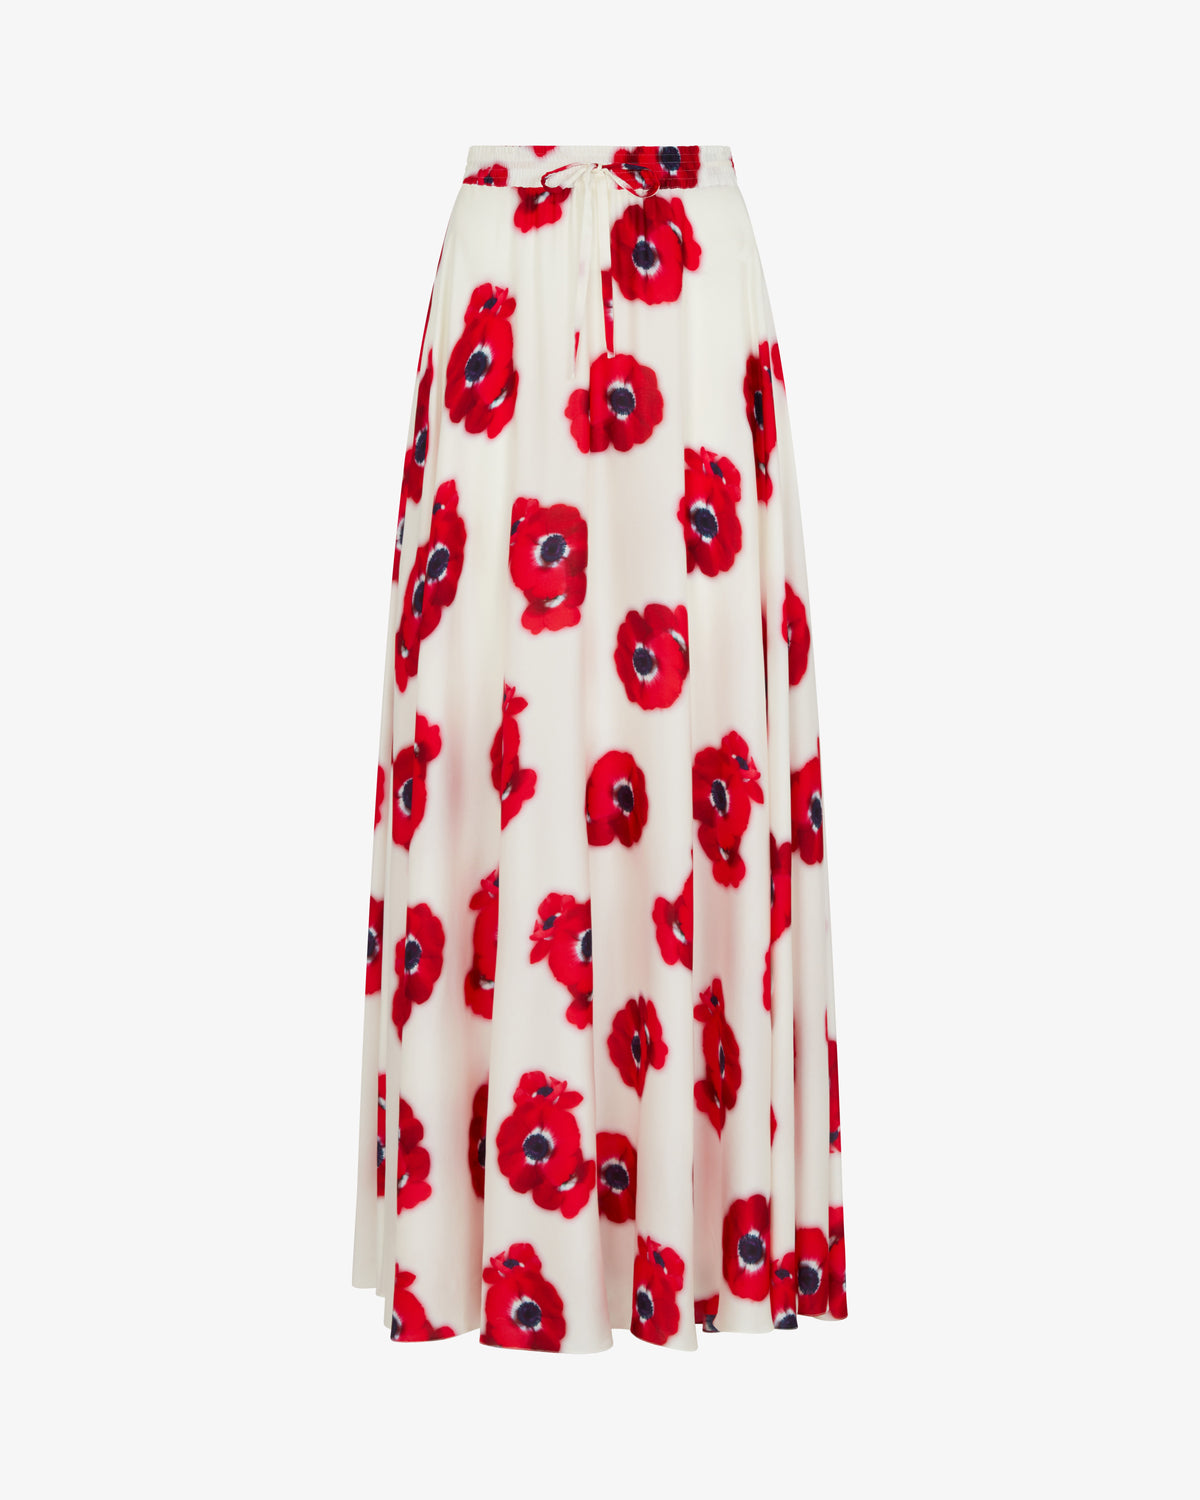 Graphic Poppy Full Maxi Skirt - White/Red